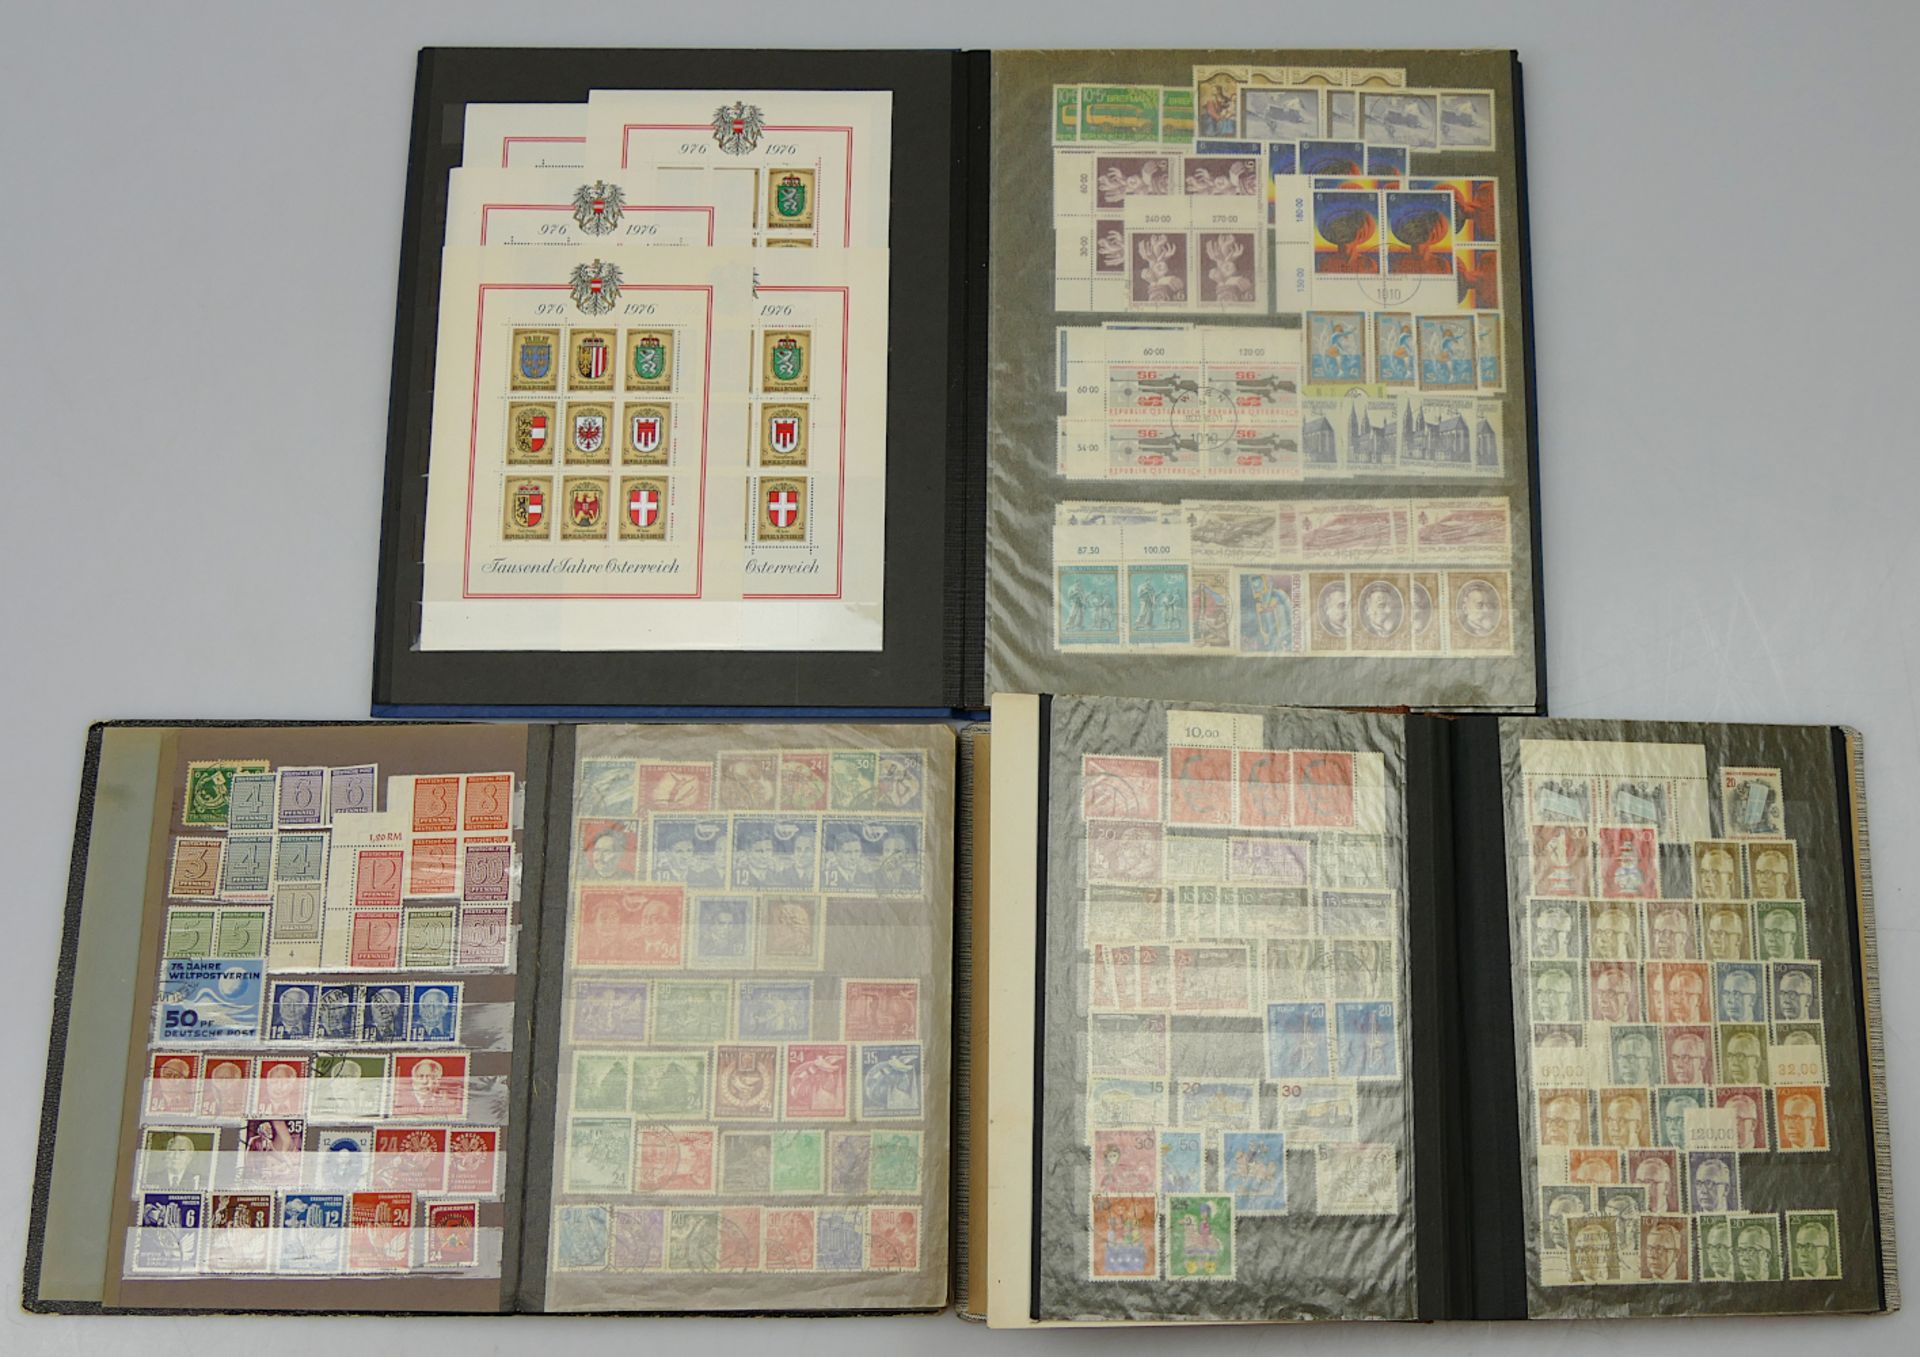 23 Ordner und Alben mit Briefmarken z.T. um 1900/Anfang 20. Jh., u.a. Deutsches Reich, Drittes Reich